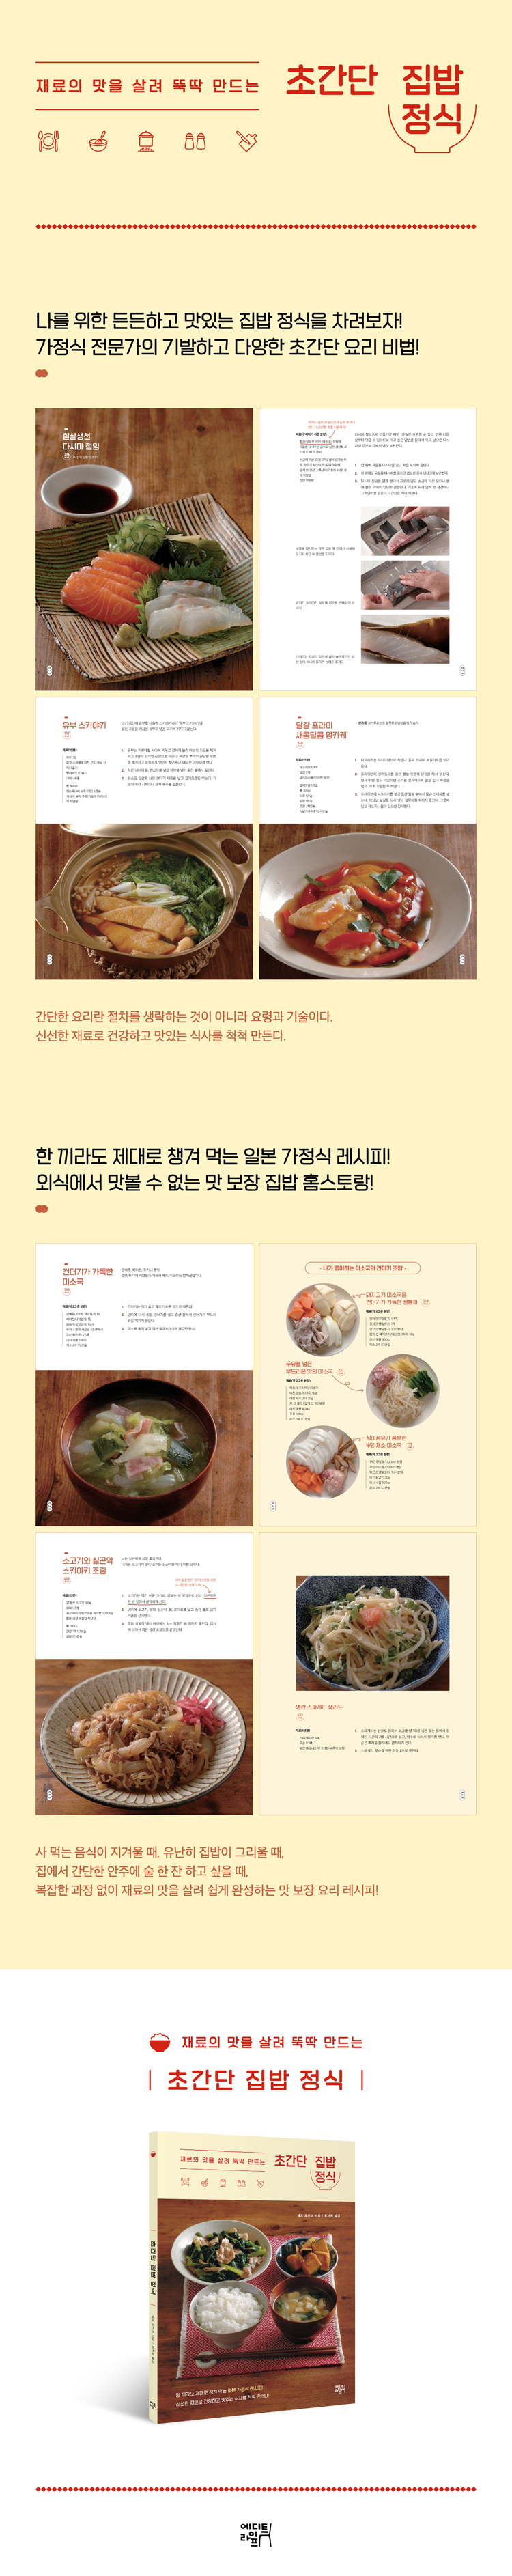 초간단 집밥 정식(재료의 맛을 살려 뚝딱 만드는) 도서 상세이미지